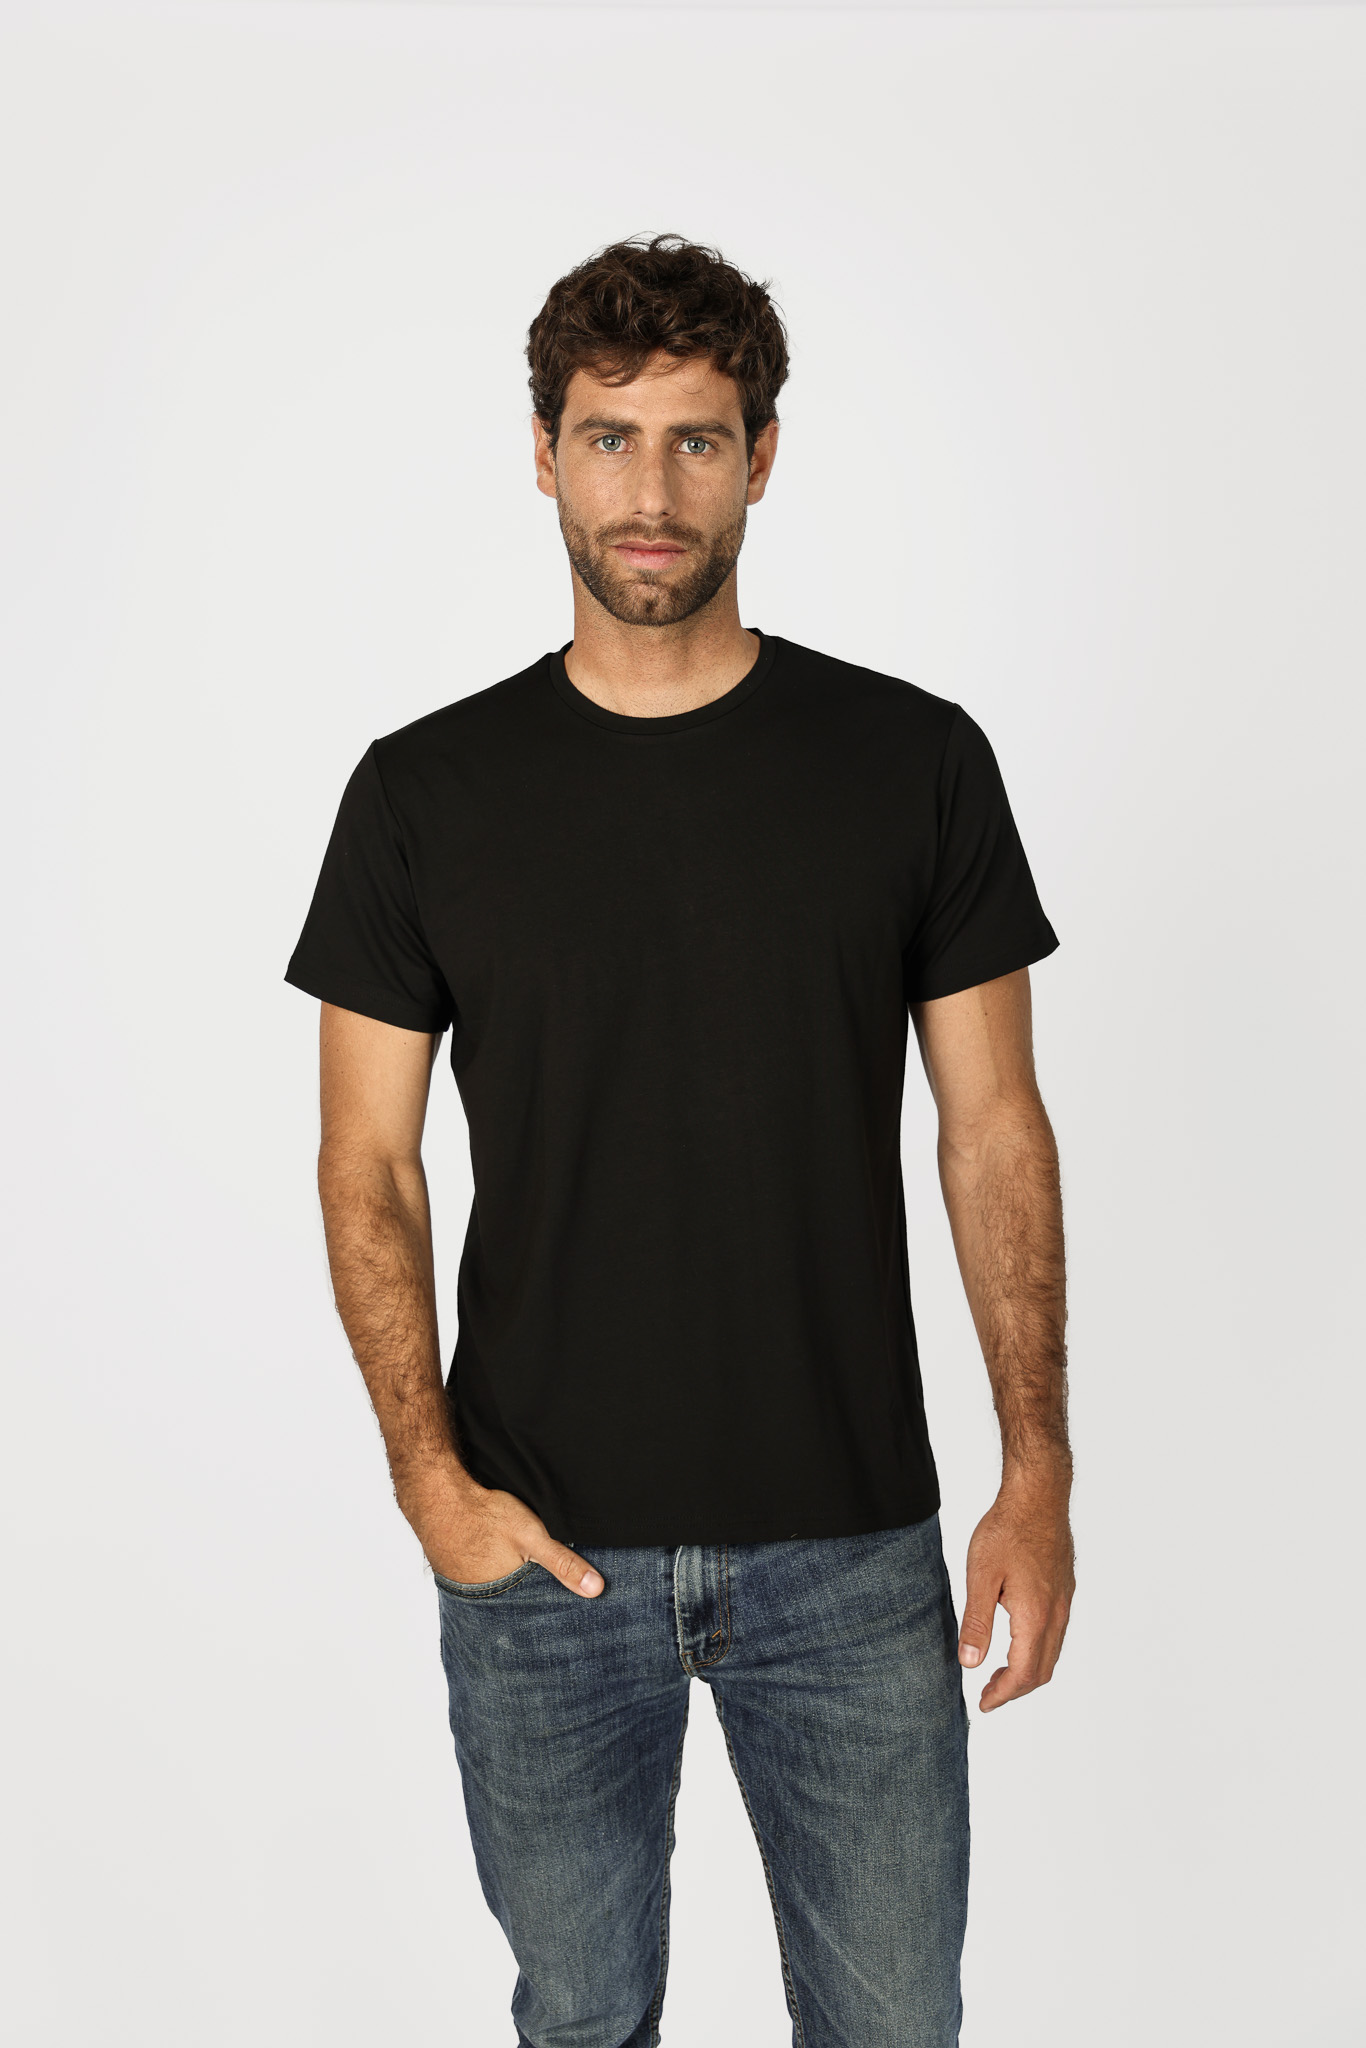 T-Shirt Custom Men - Black - Imagen 1